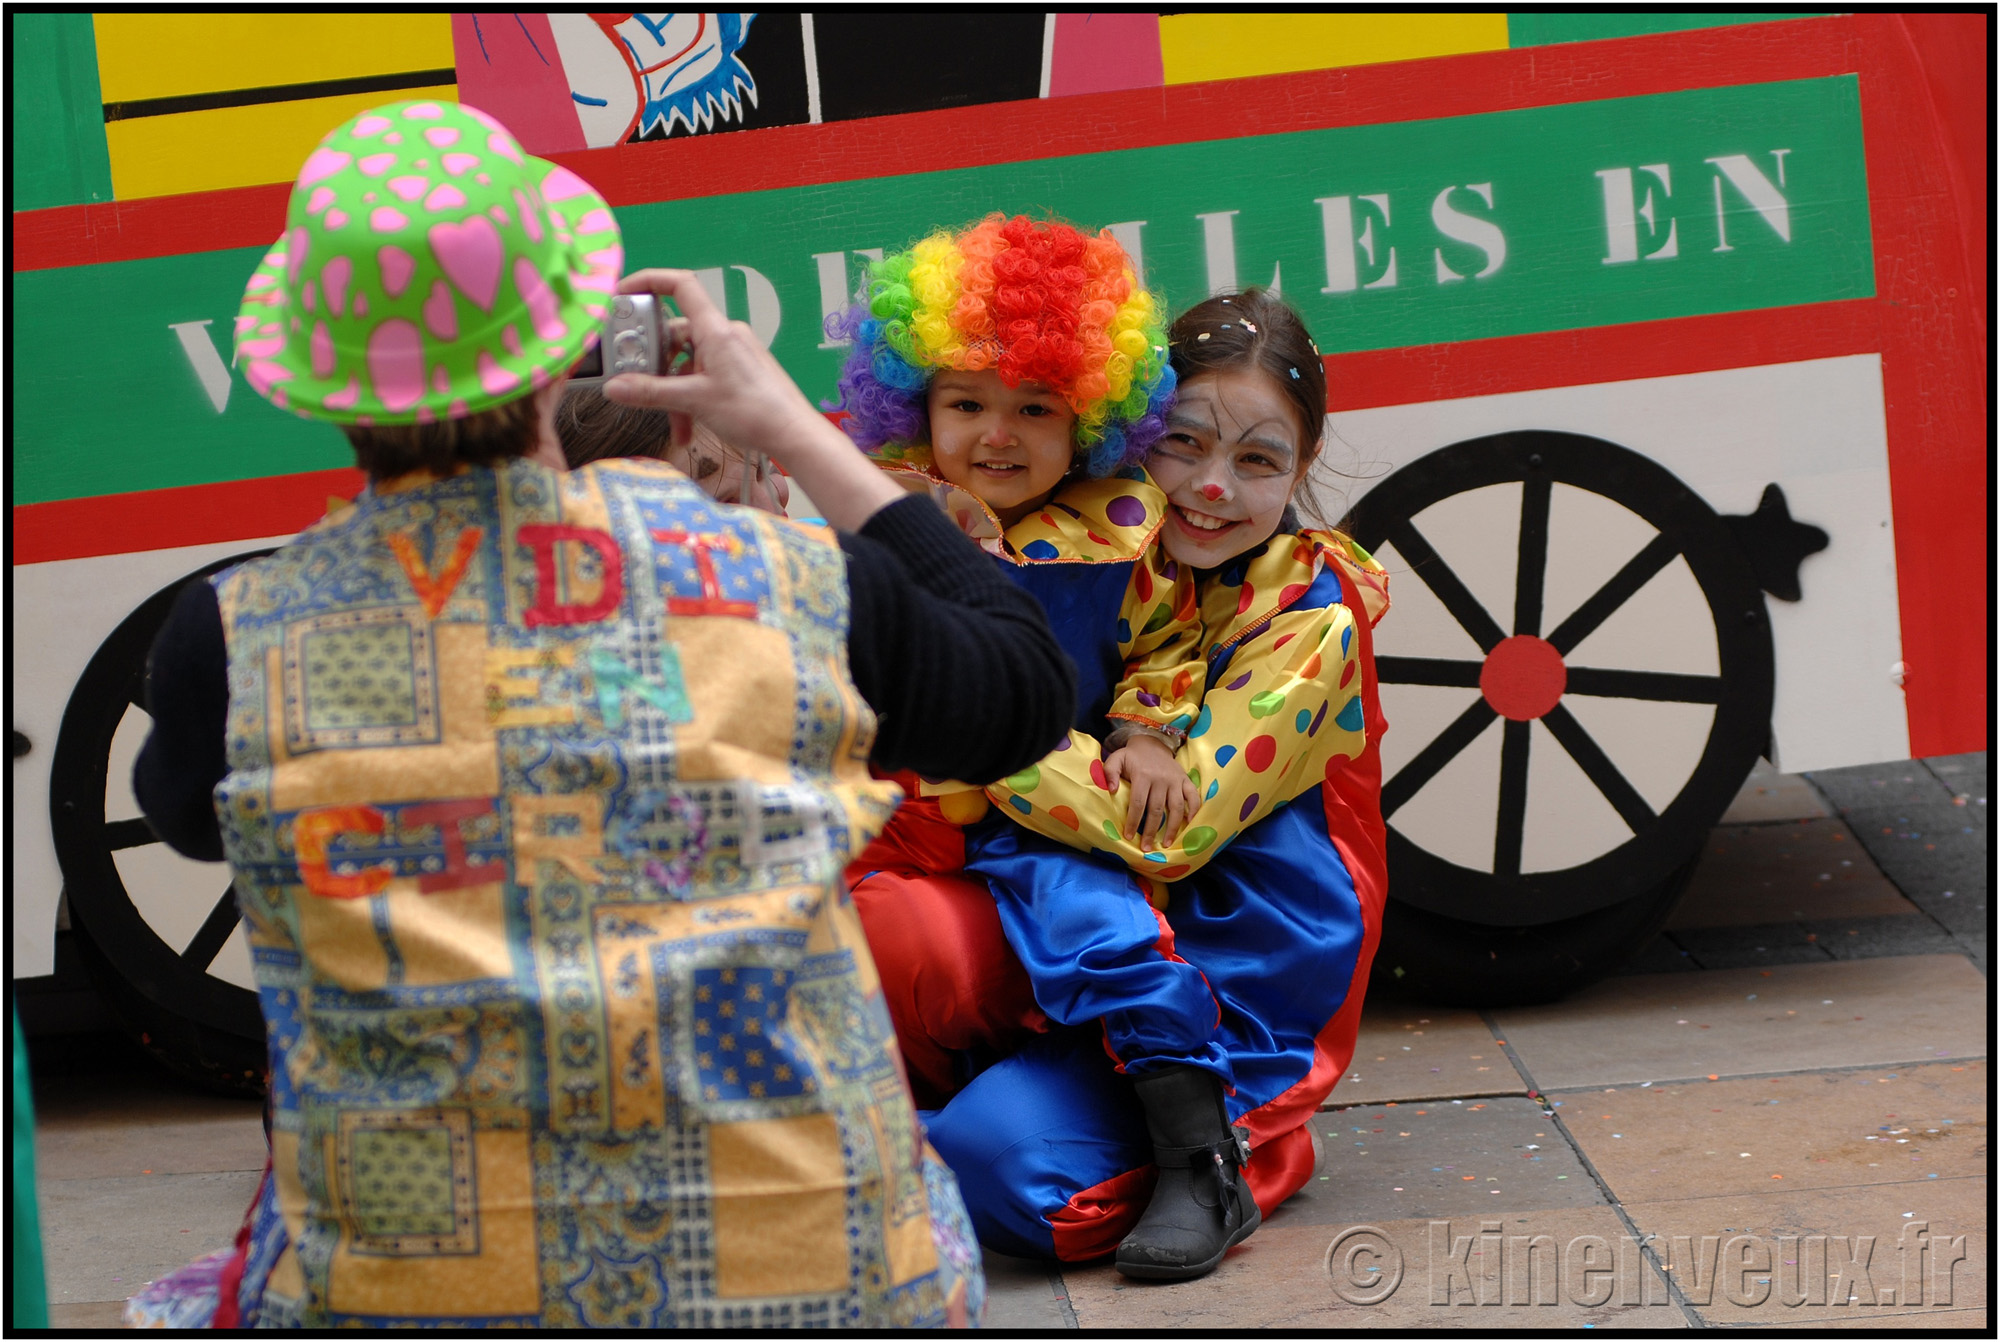 kinenveux_43_carnaval2015lr.jpg - Carnaval des Enfants 2015 - La Rochelle